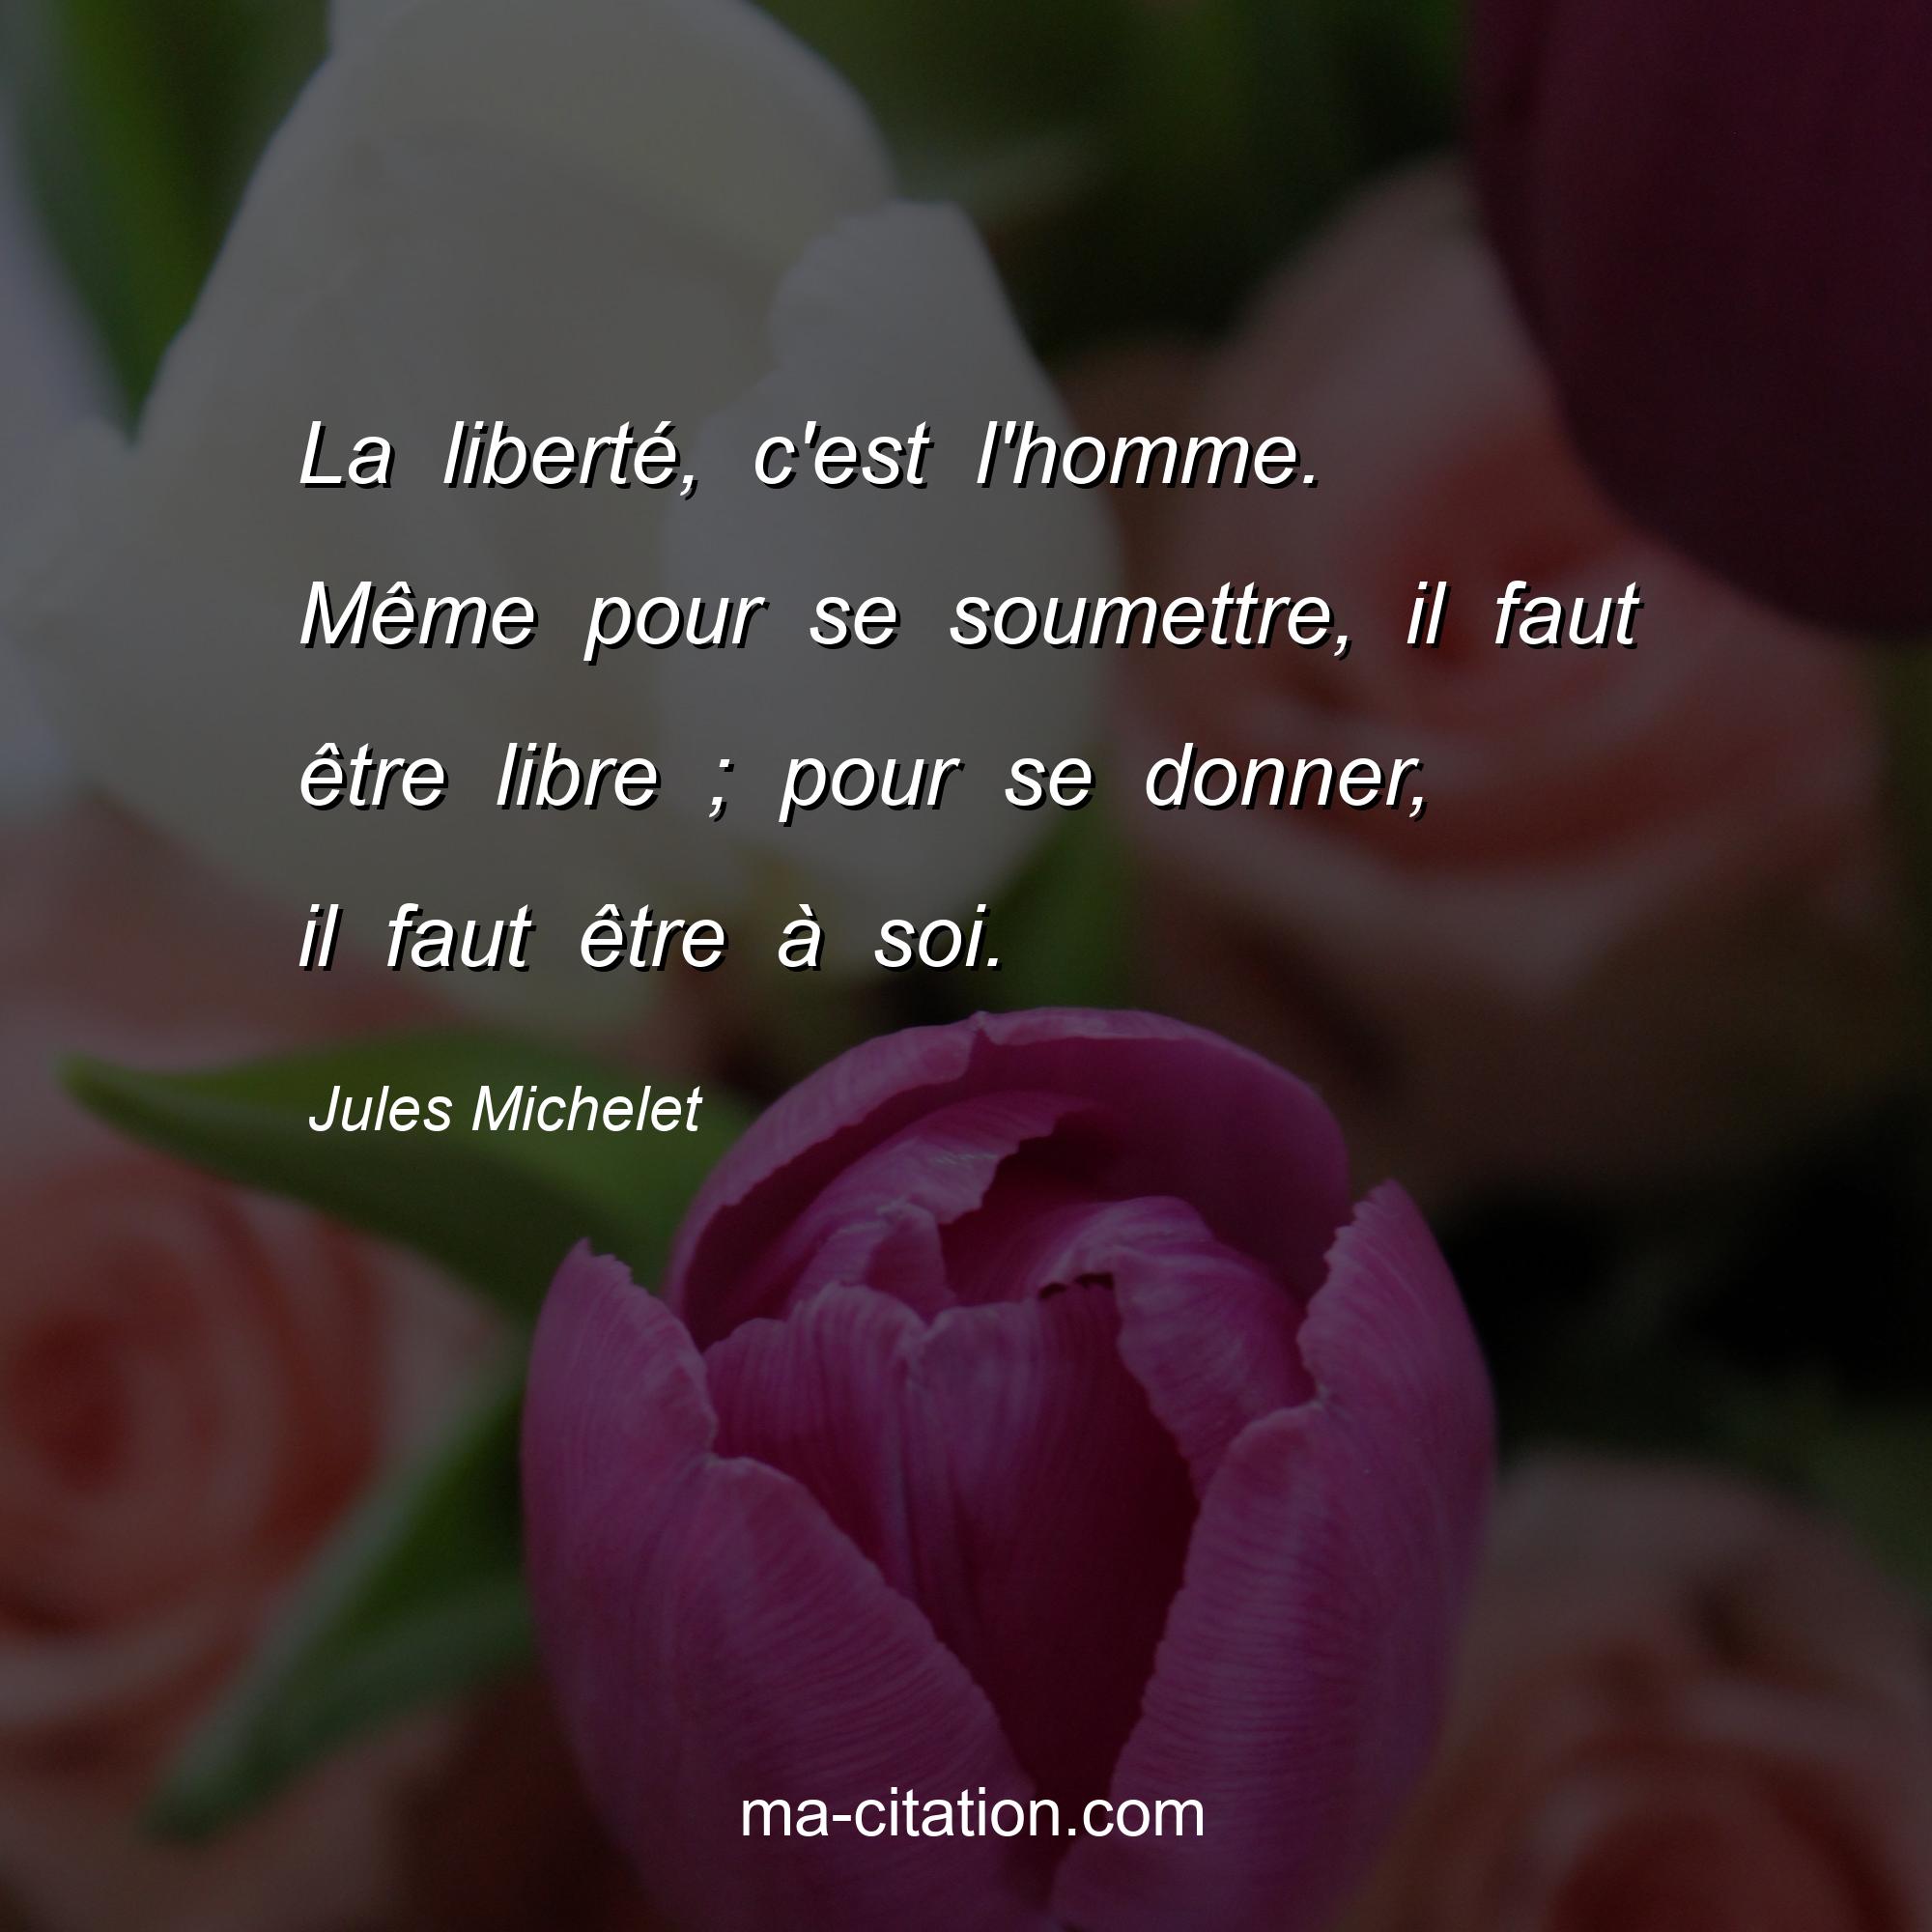 Jules Michelet : La liberté, c'est l'homme. Même pour se soumettre, il faut être libre ; pour se donner, il faut être à soi.